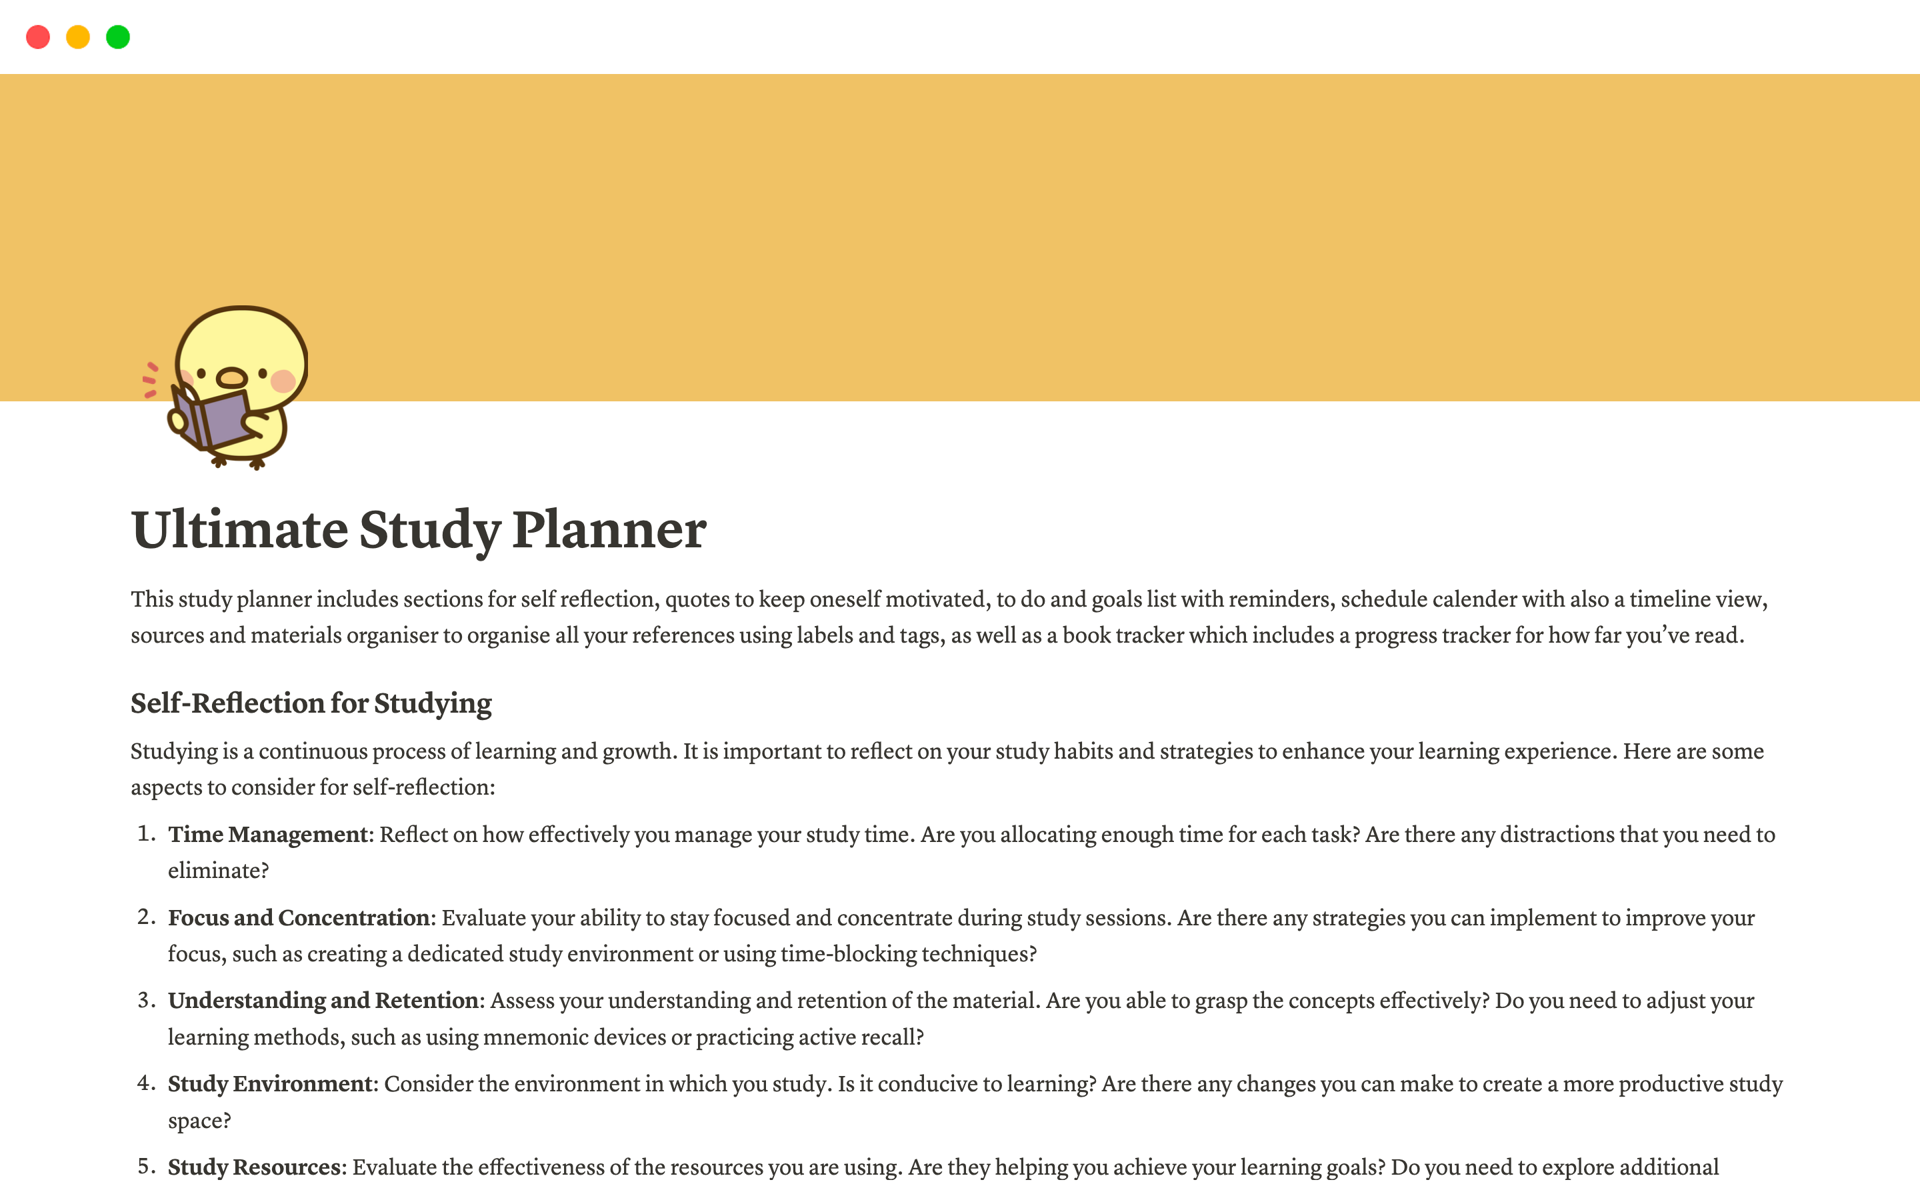 En förhandsgranskning av mallen för Ultimate Study Planner